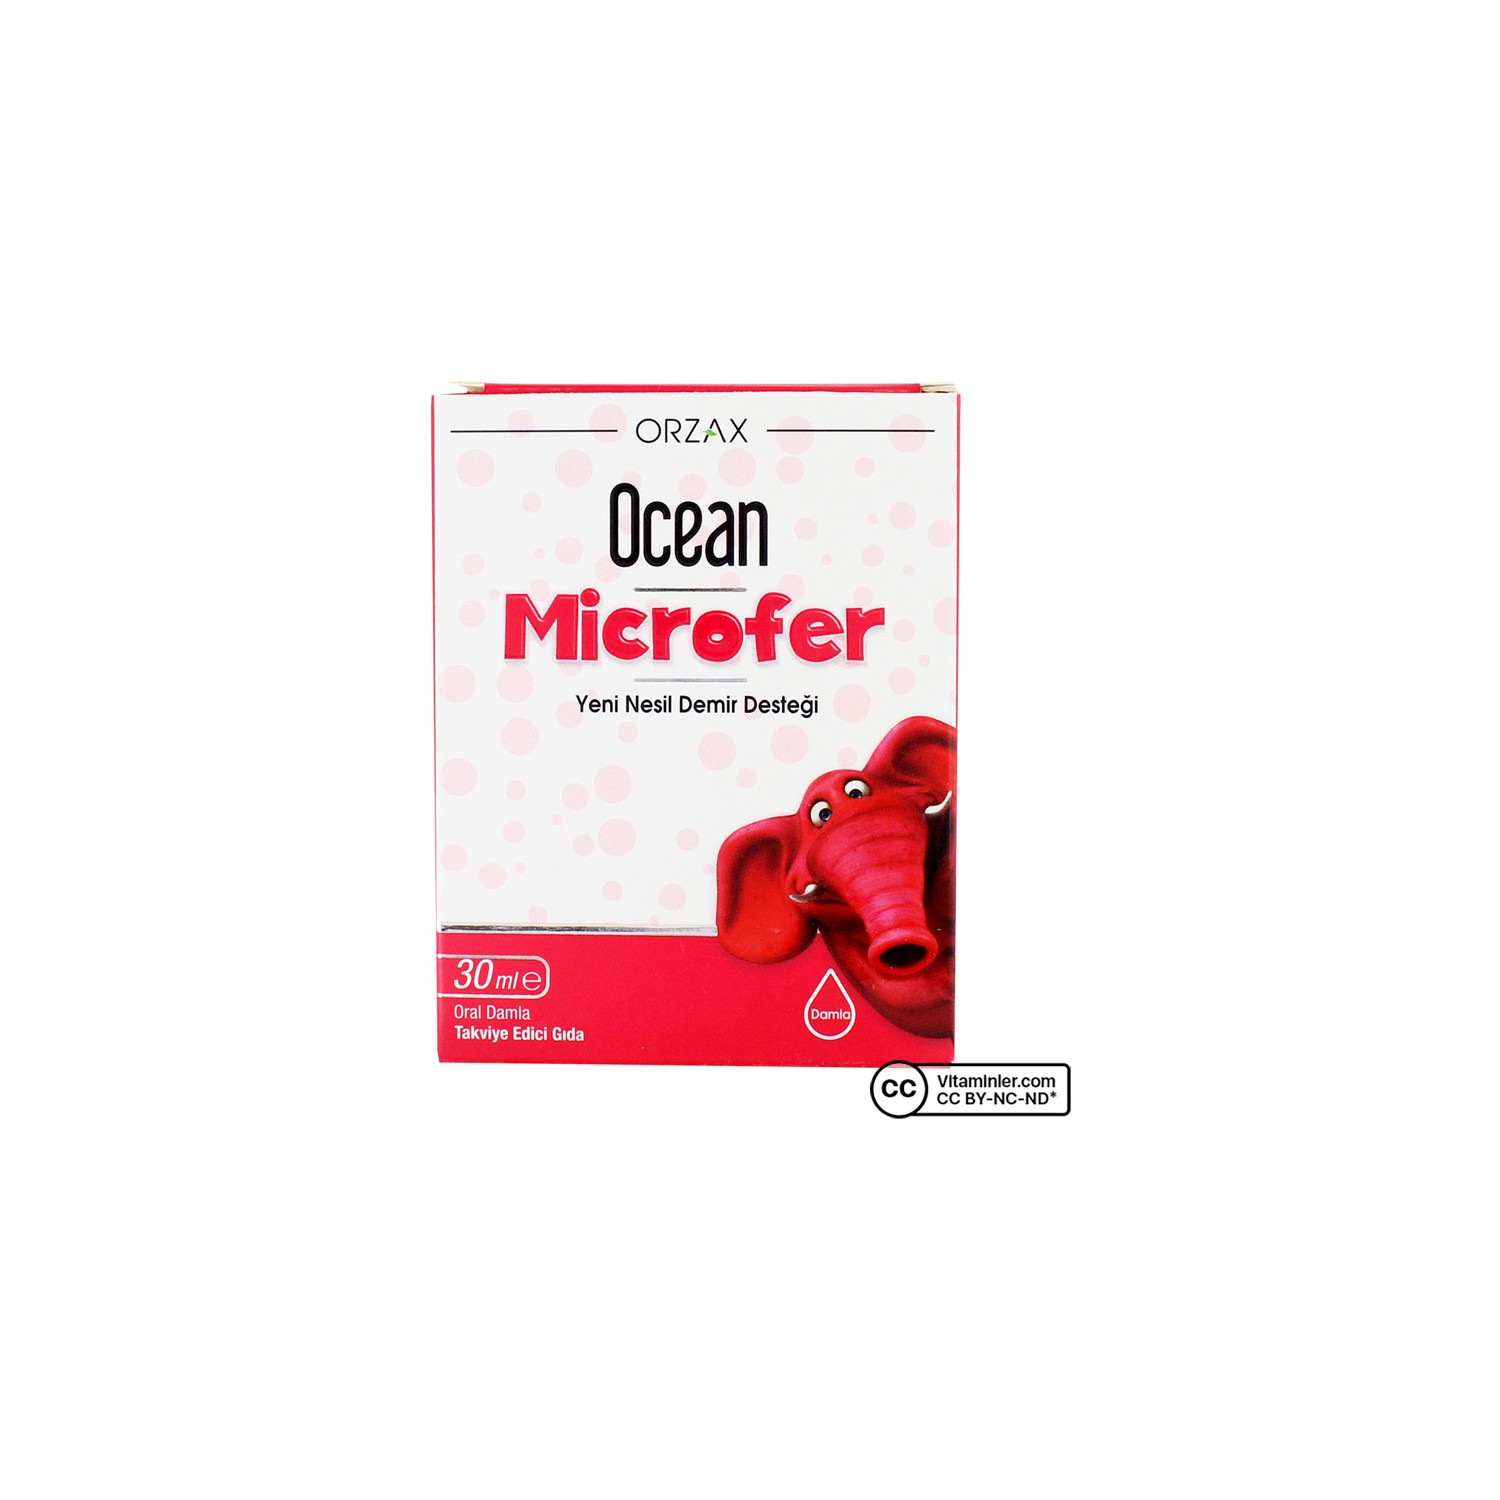 Капли Orzax Ocean Microfer для перорального применения, 30 мл пищевая добавка orzax ocean 5 htp 100 мг 30 капсул